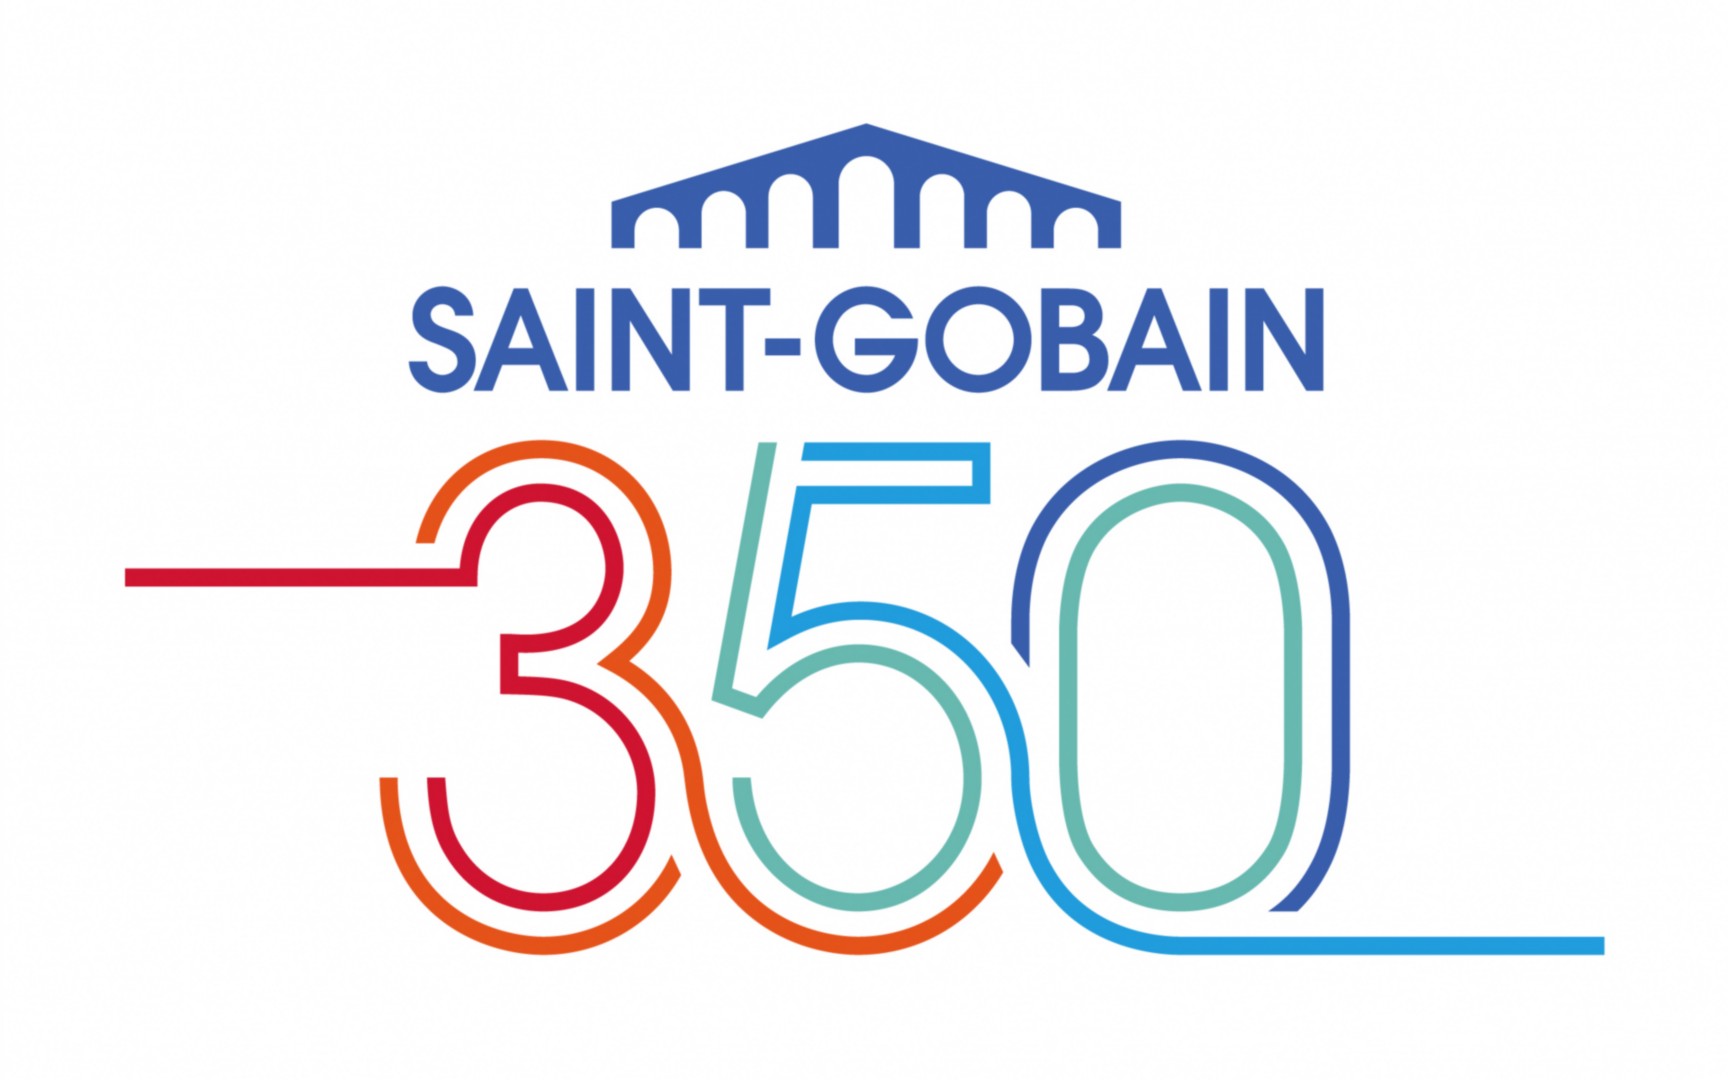 Saint Gobain wi tuje 350 lecie